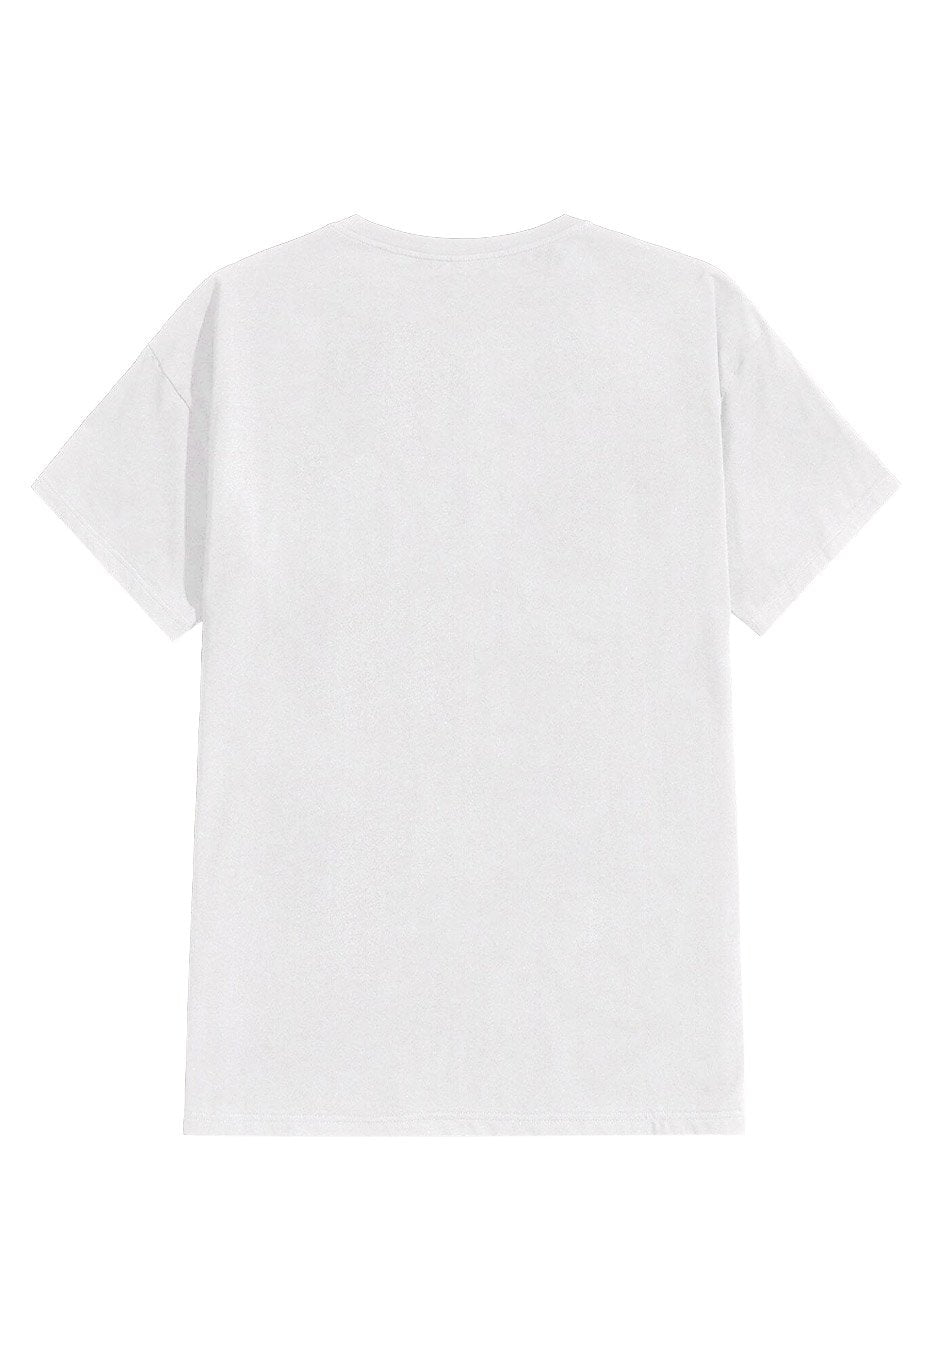 Rammstein - Schneid Es Ab White - T-Shirt